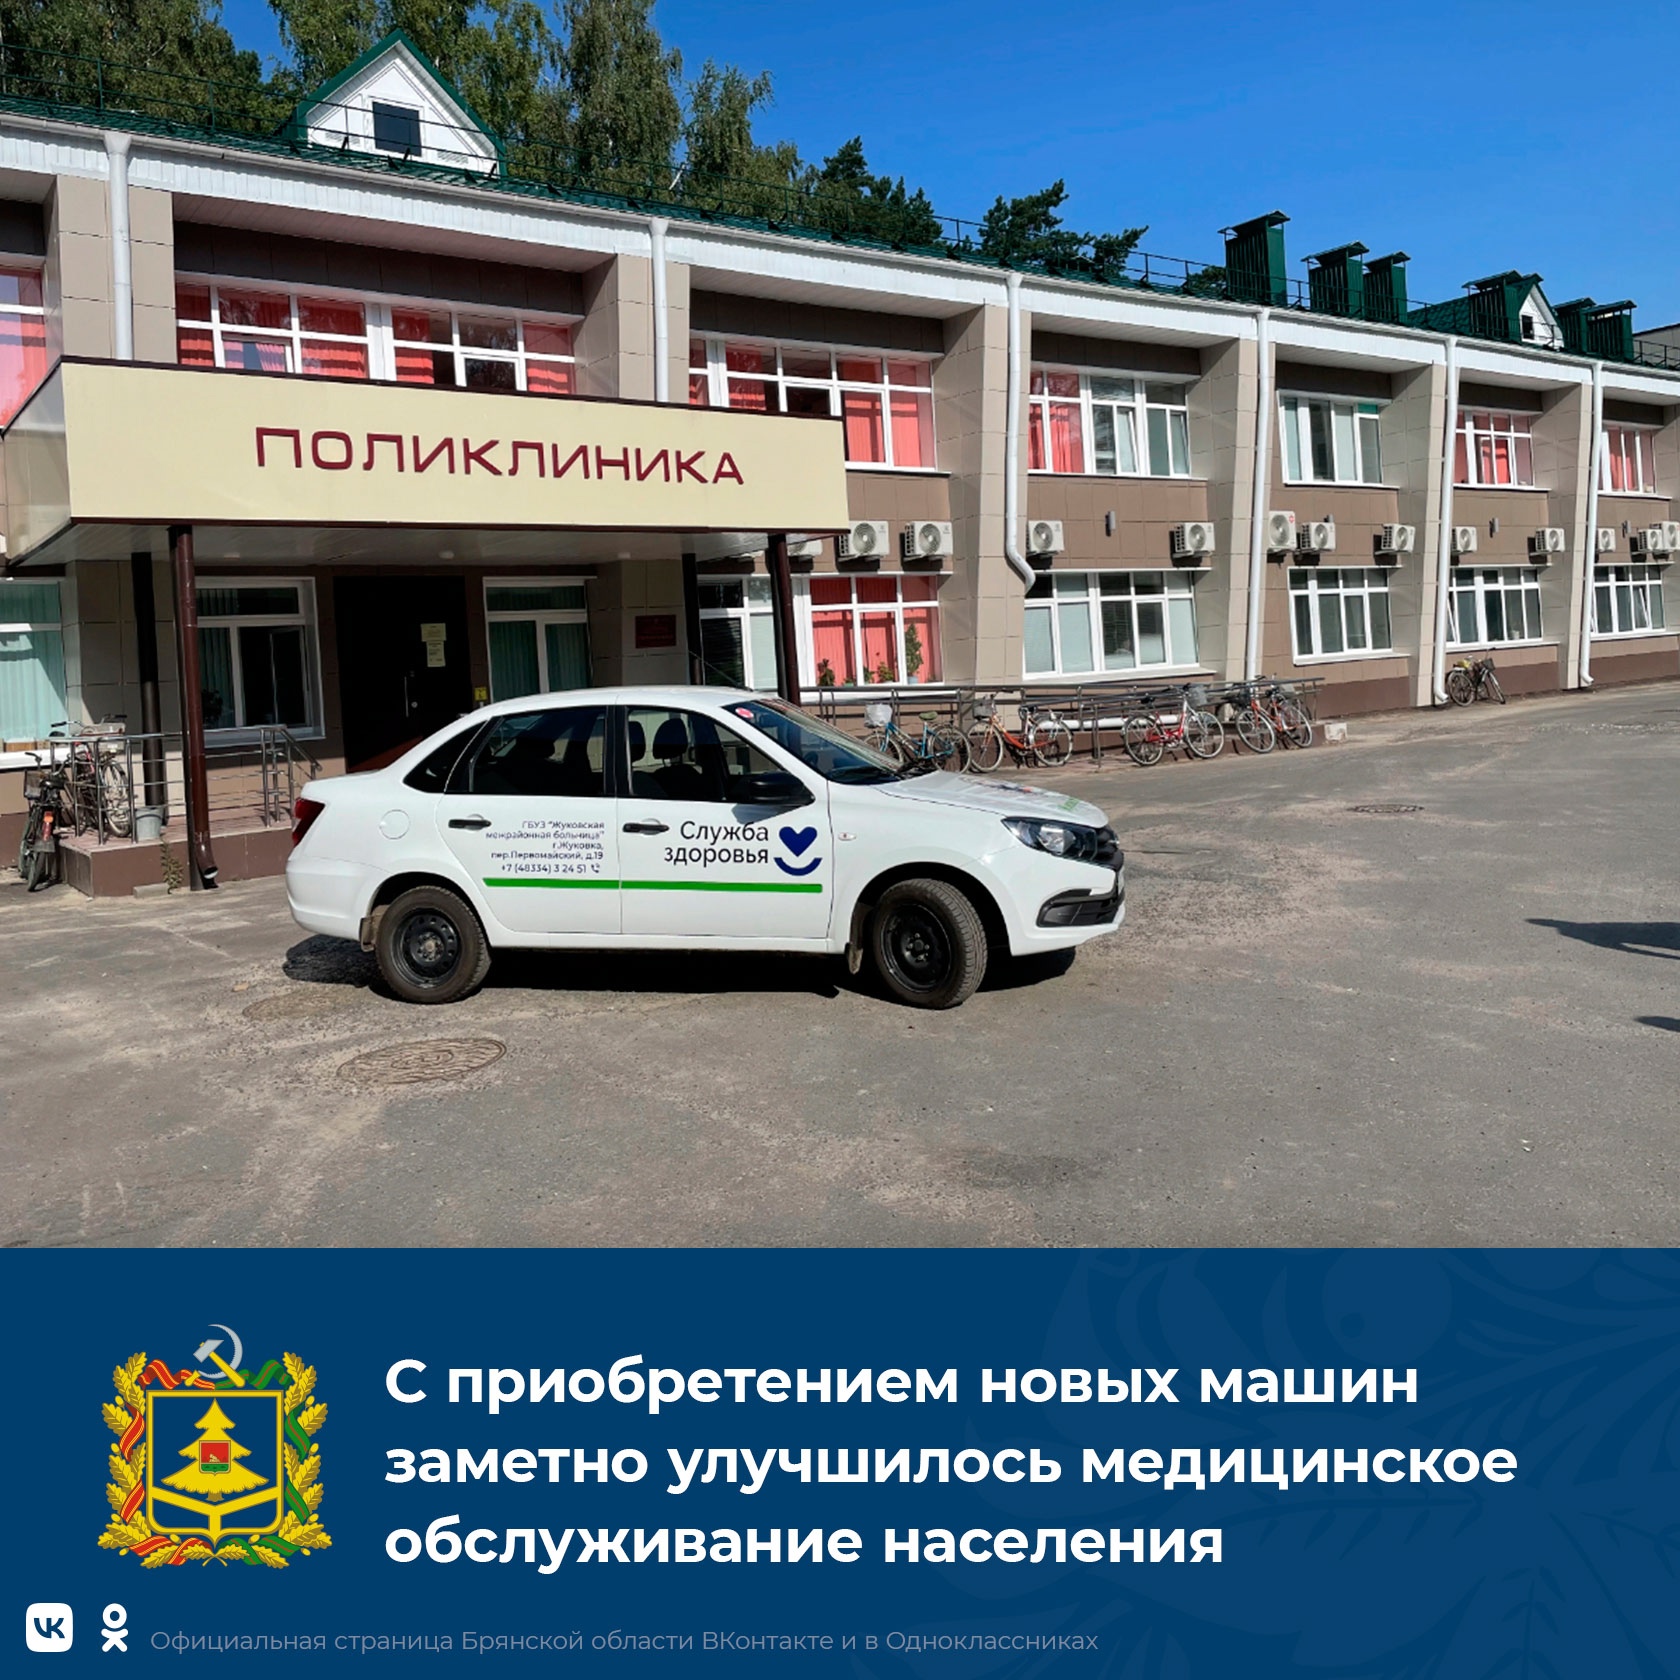 В Жуковской межрайонной больнице появились новые автомобили